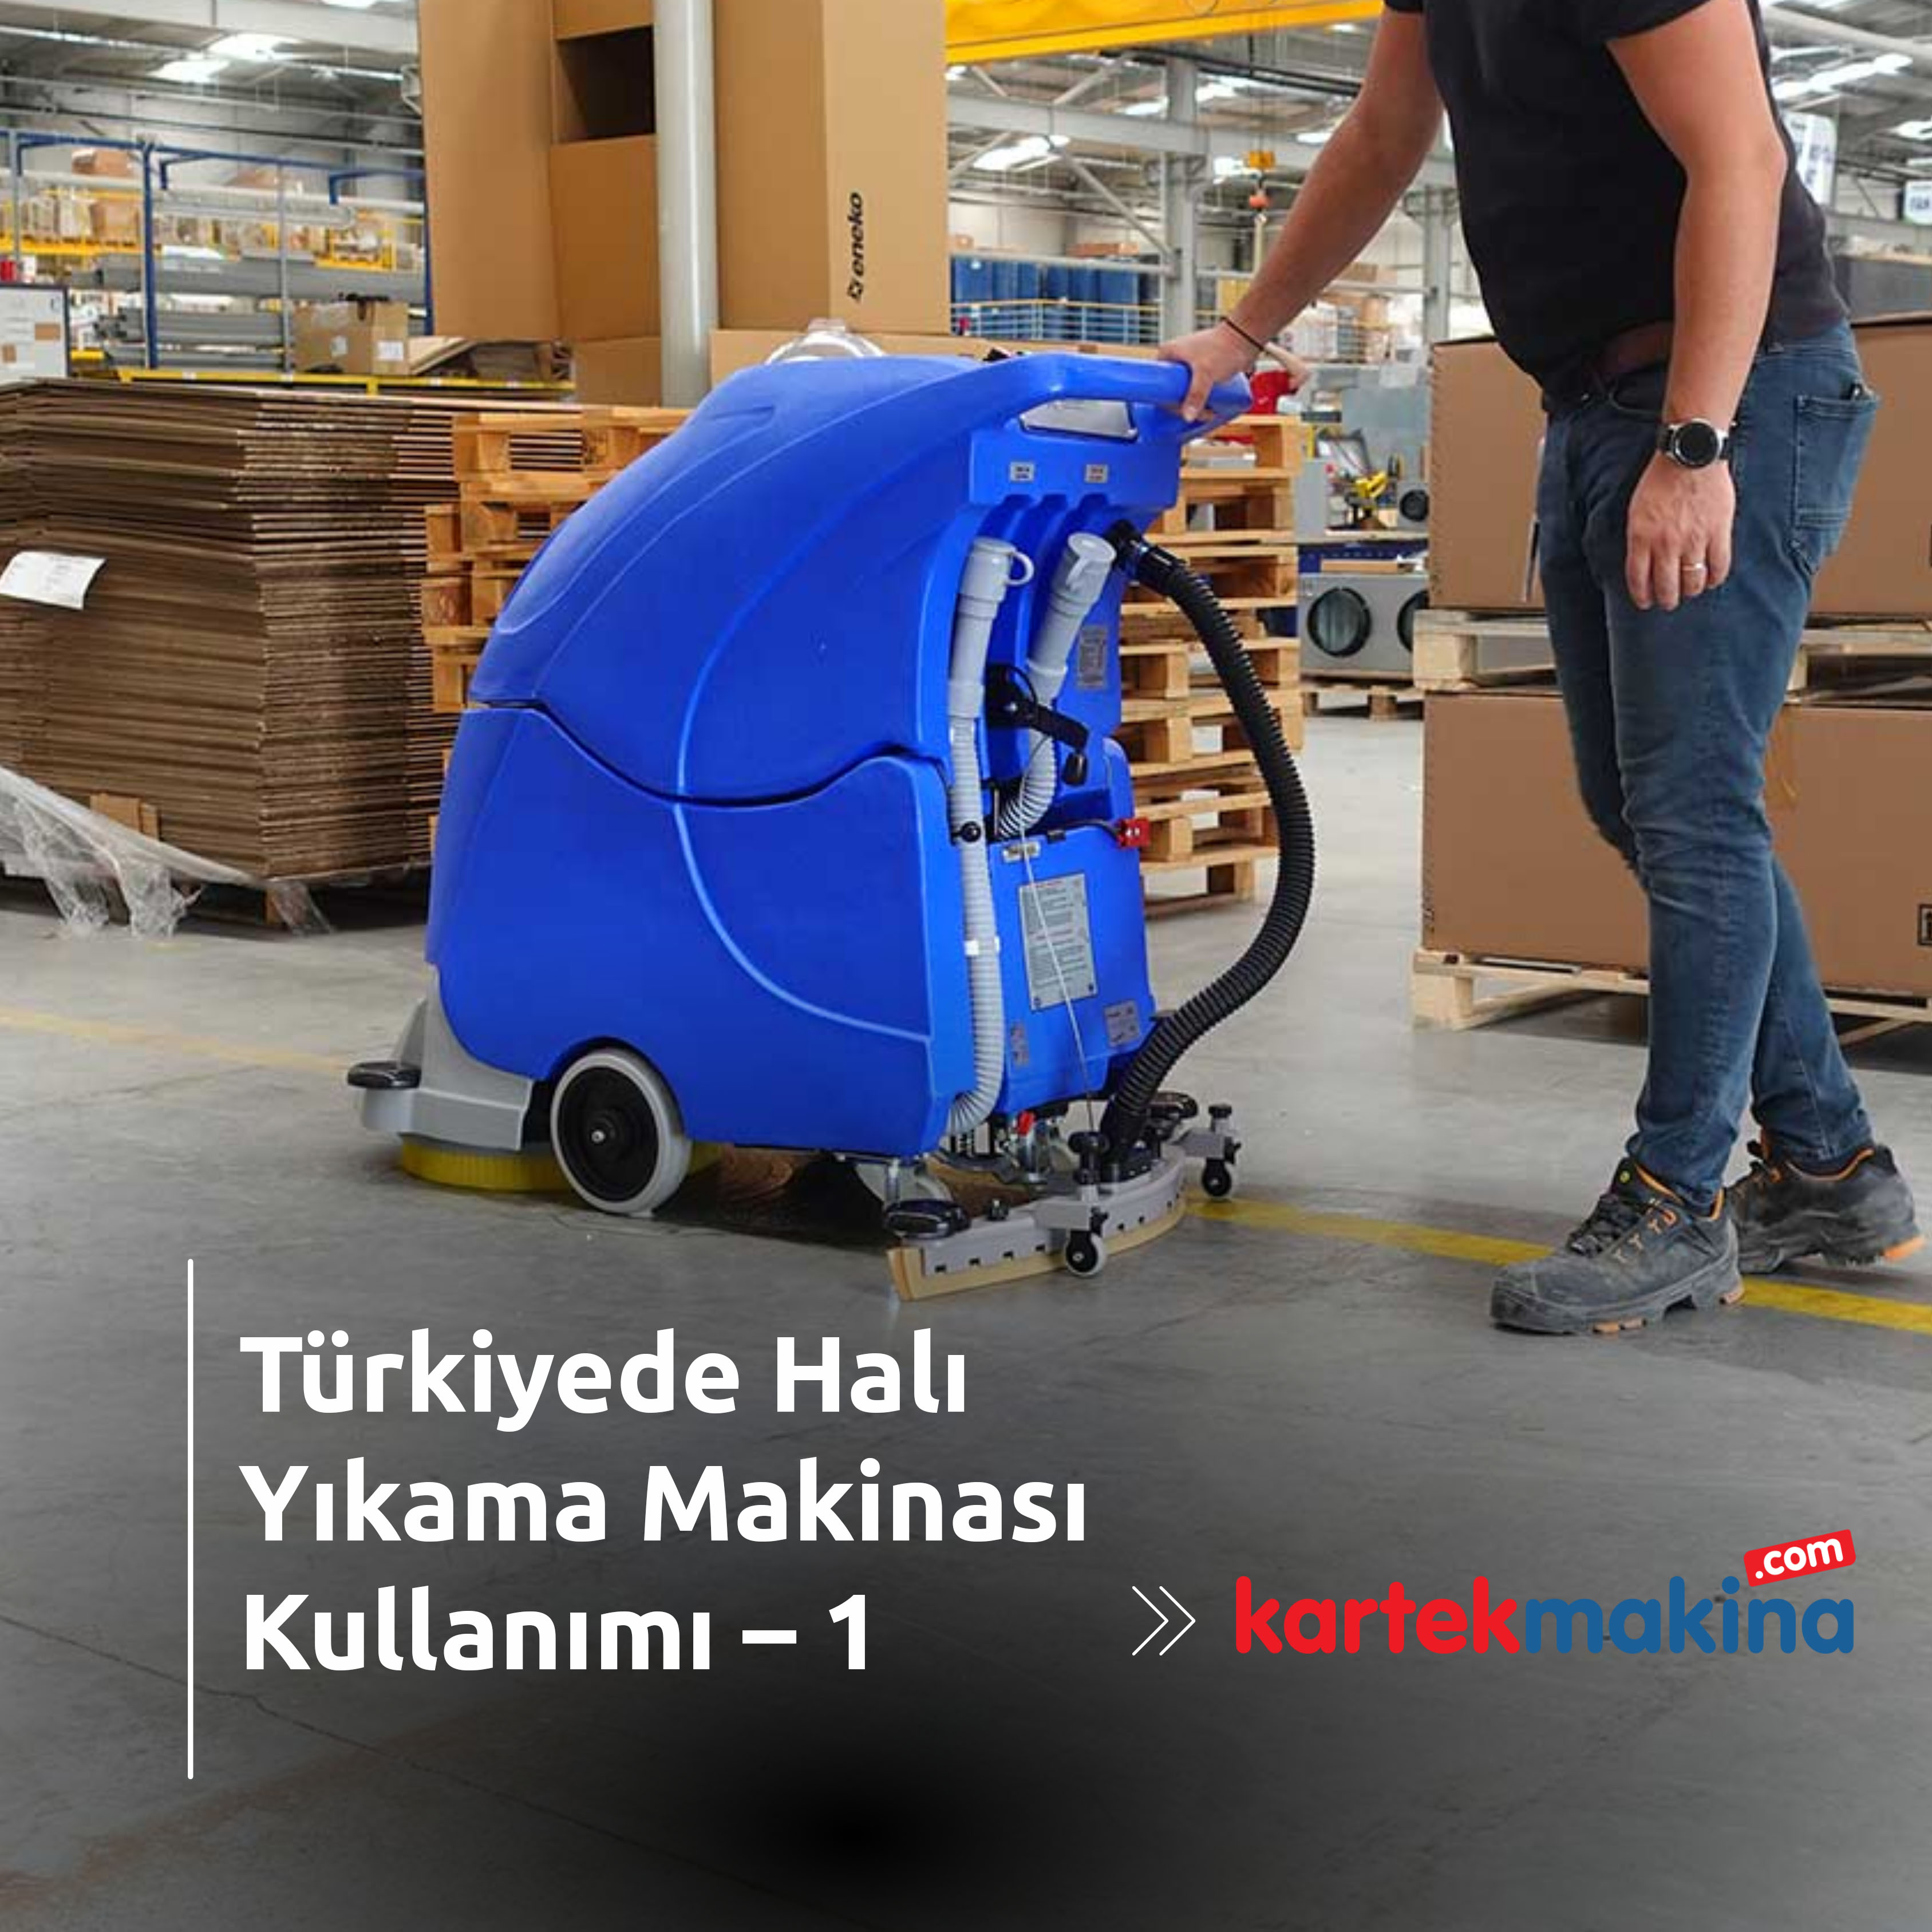 Türkiyede Halı Yıkama Makinası Kullanımı – 1 - Türkiyede Halı Yıkama Makinası Kullanımı – 1